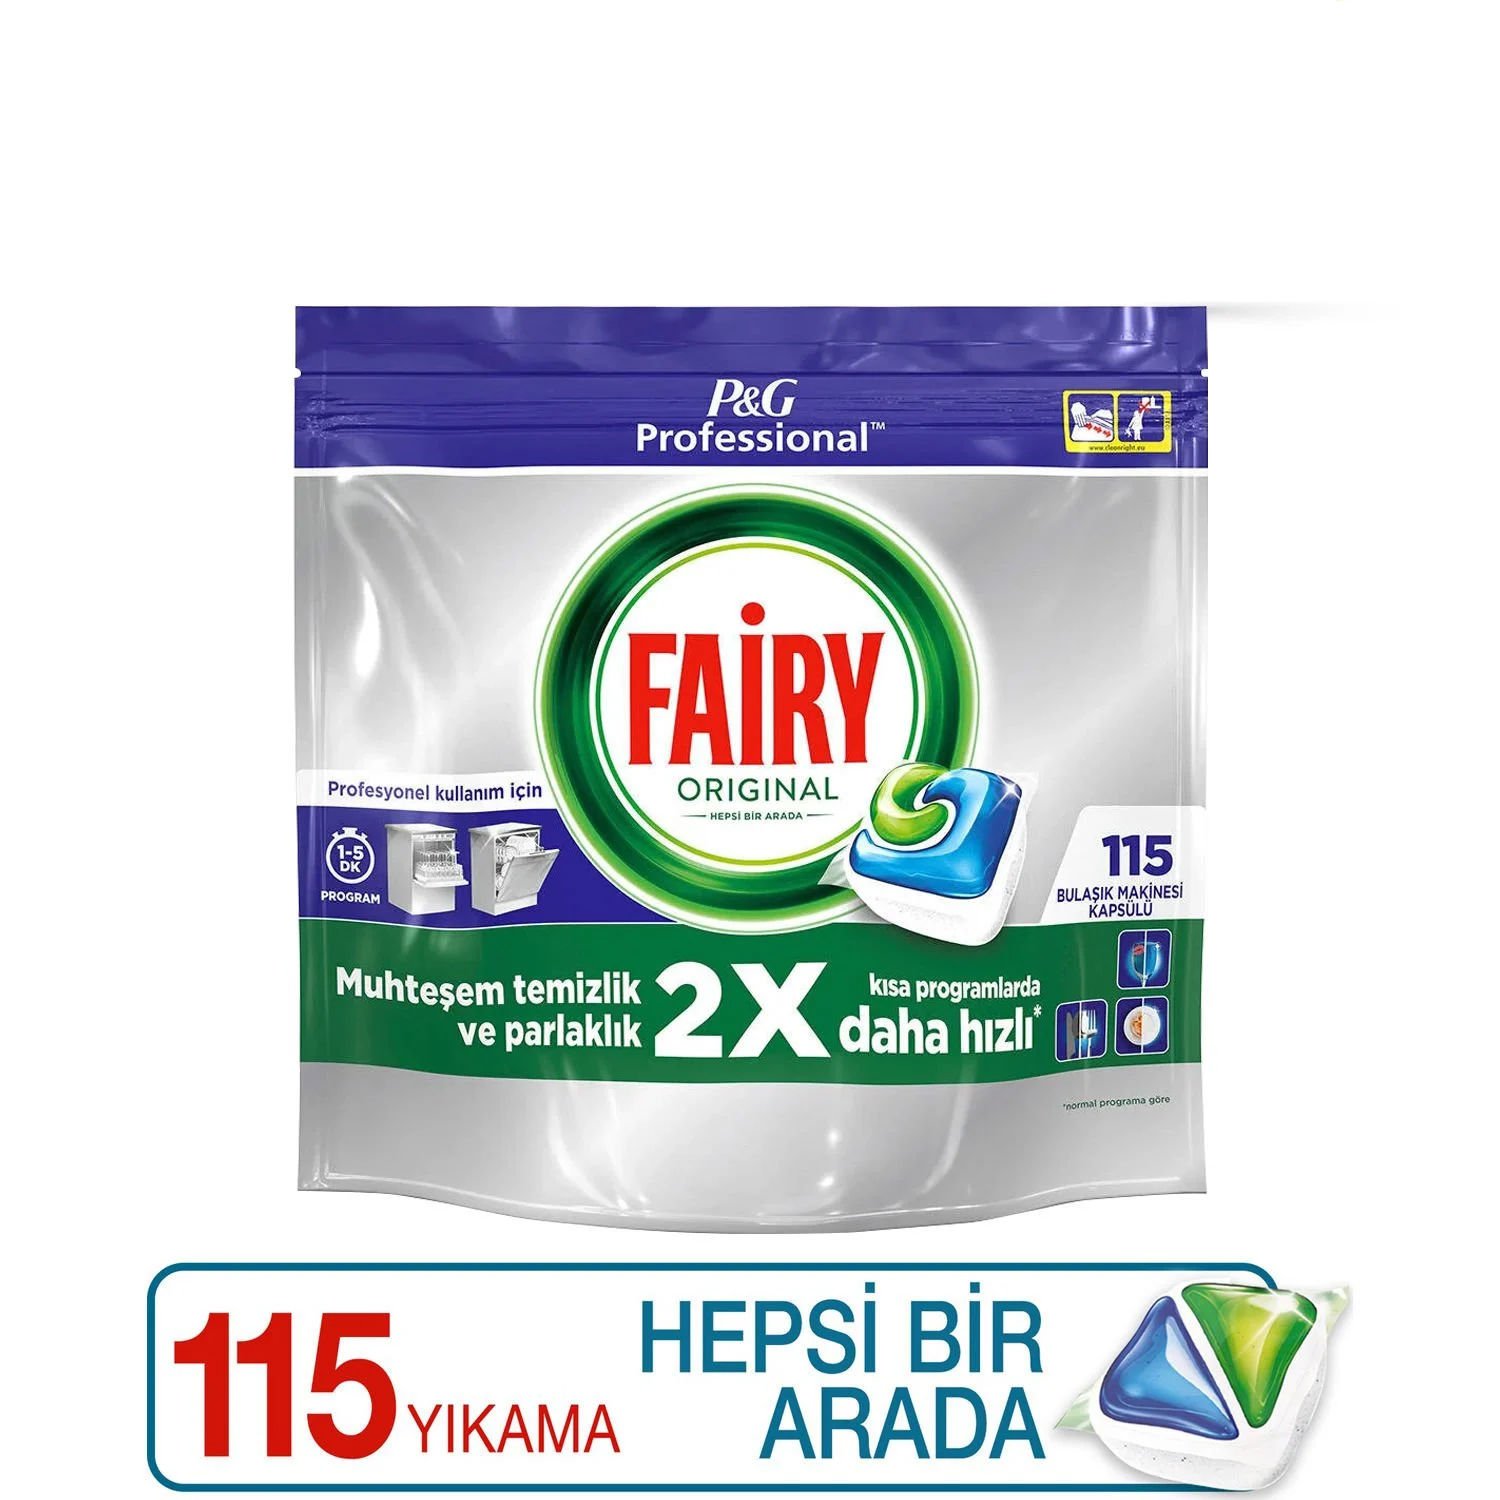 Fairy Professional Jar Orginal 115'li Yıkama Hepsi Bir Arada Bulaşık Makinesi Deterjanı Kapsülü